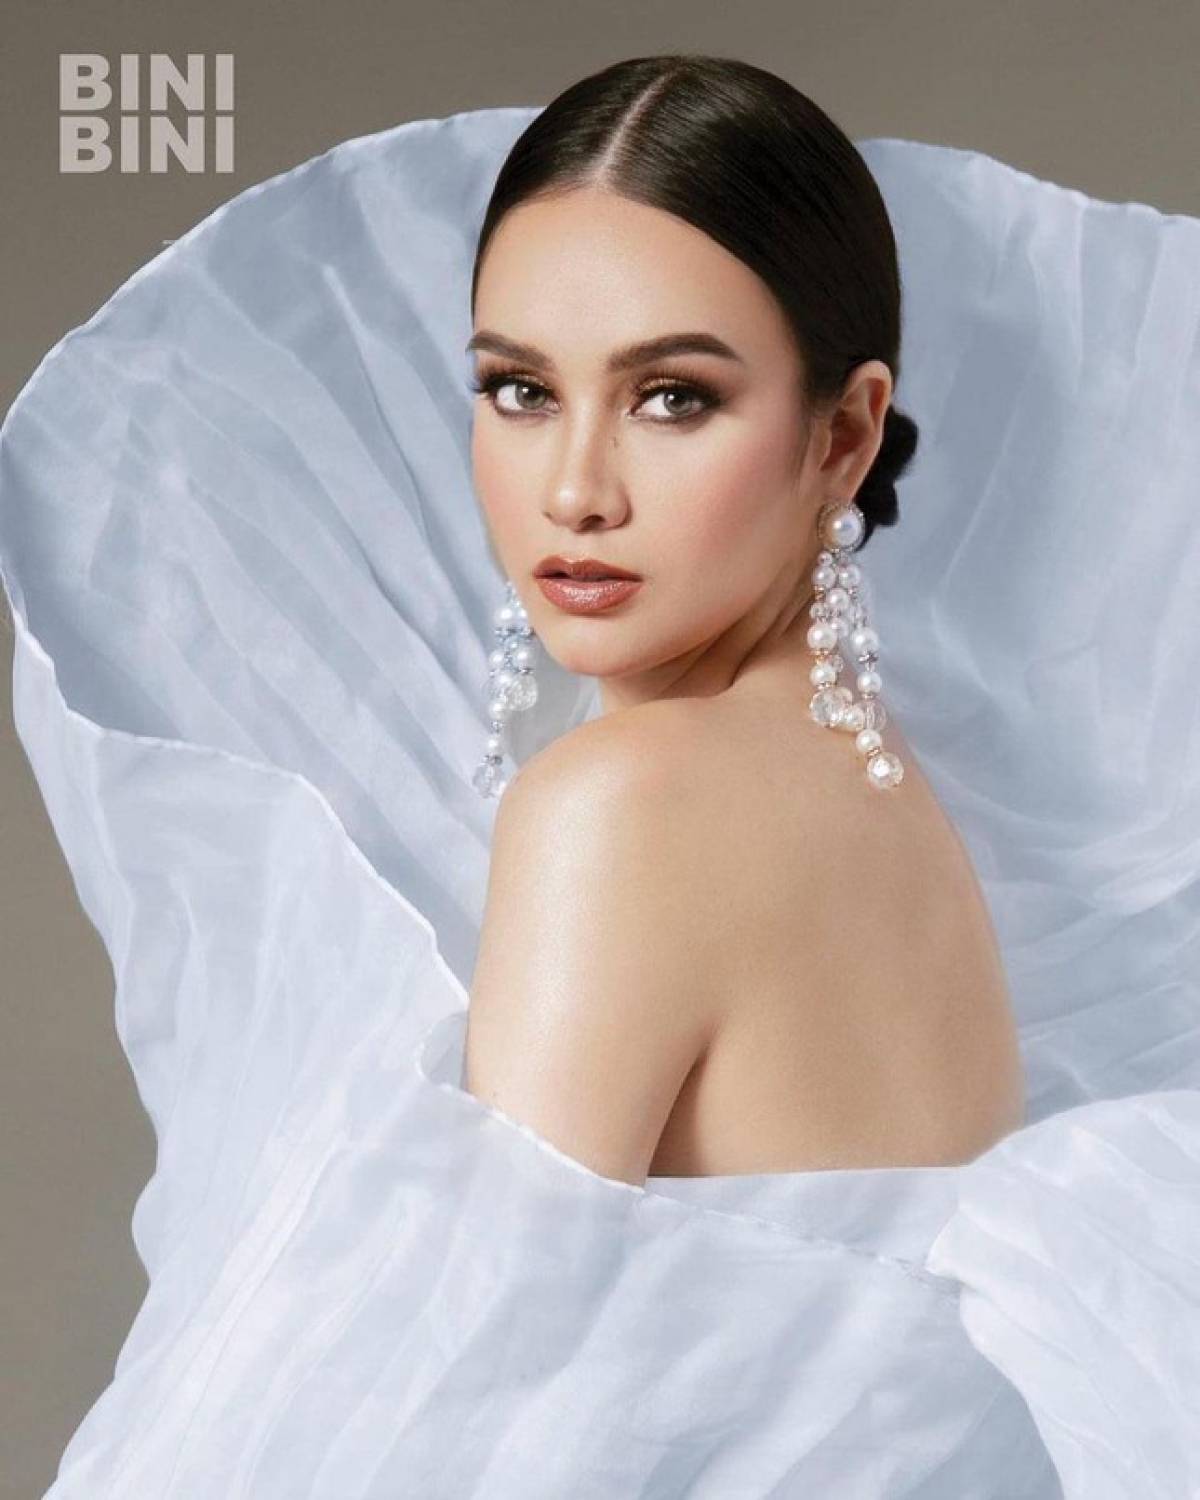 Vẻ đẹp lai ngọt ngào của tân Hoa hậu Quốc tế Philippines 2021 - Ảnh 4.